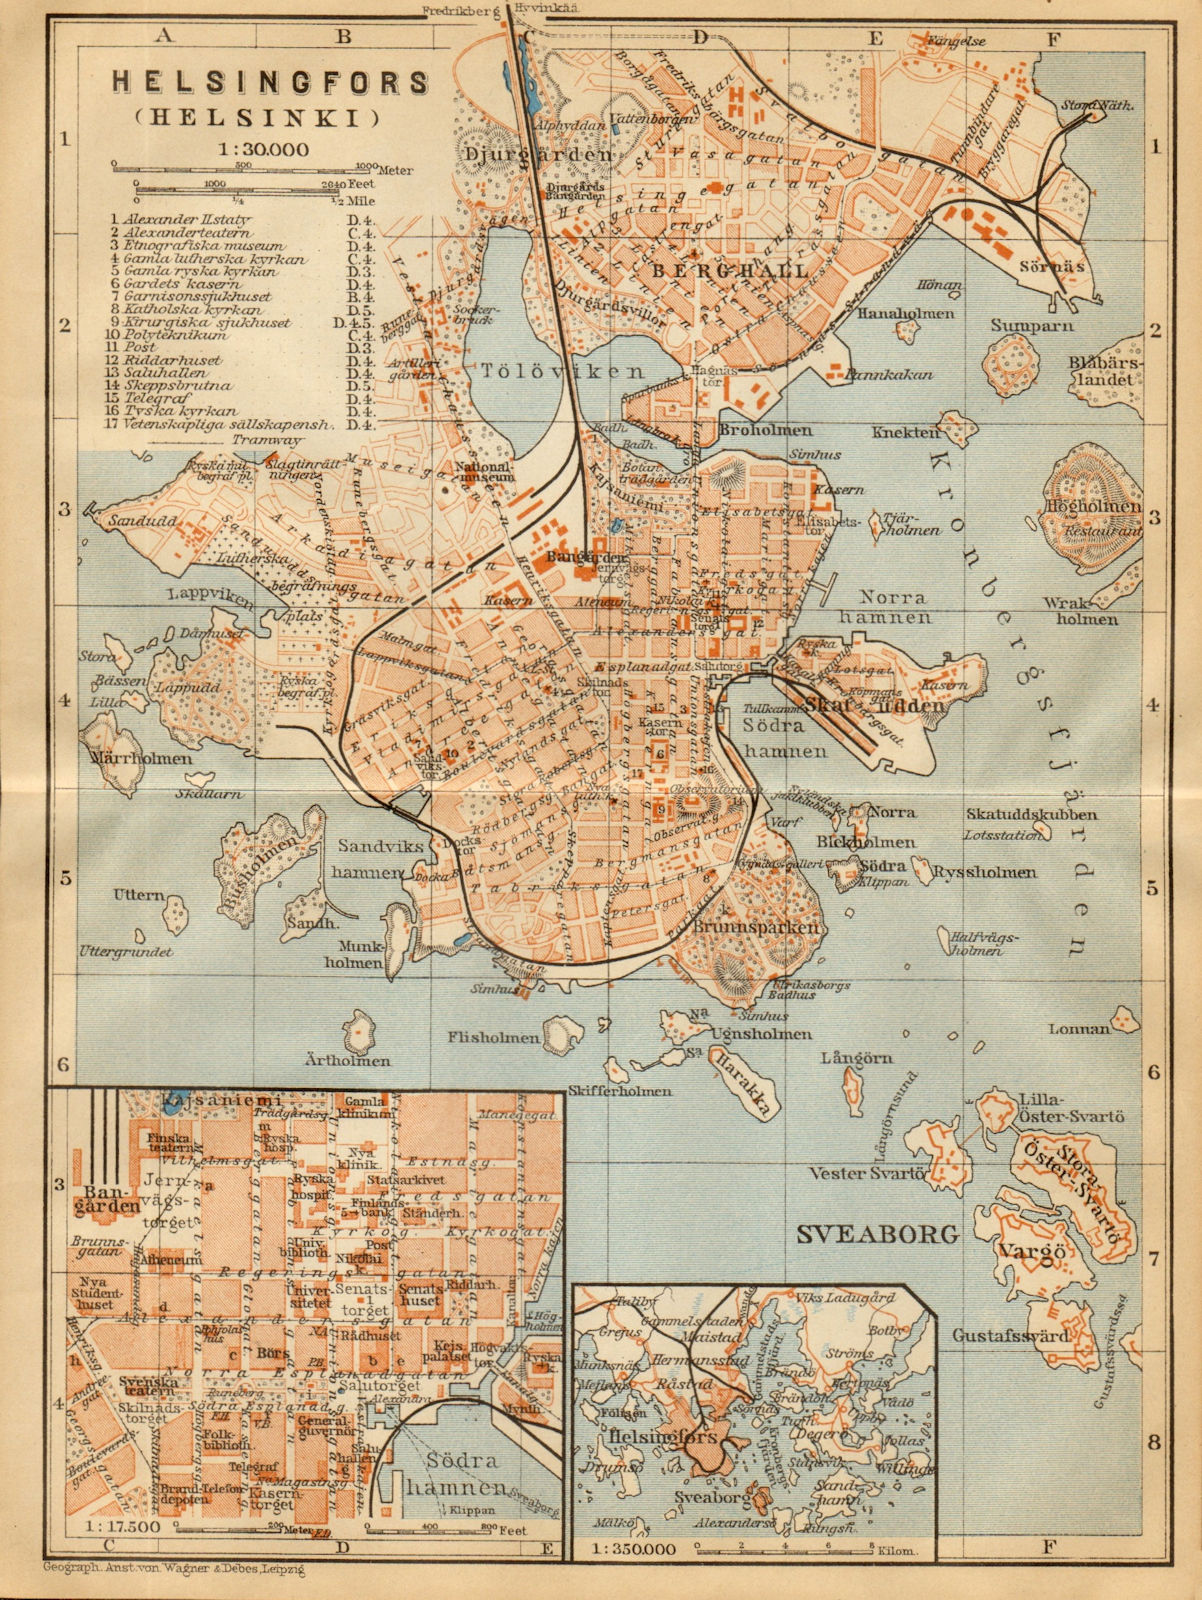 Helsinki (Helsingfors) town/city plan kaupunki kartta Finland. BAEDEKER 1912 map